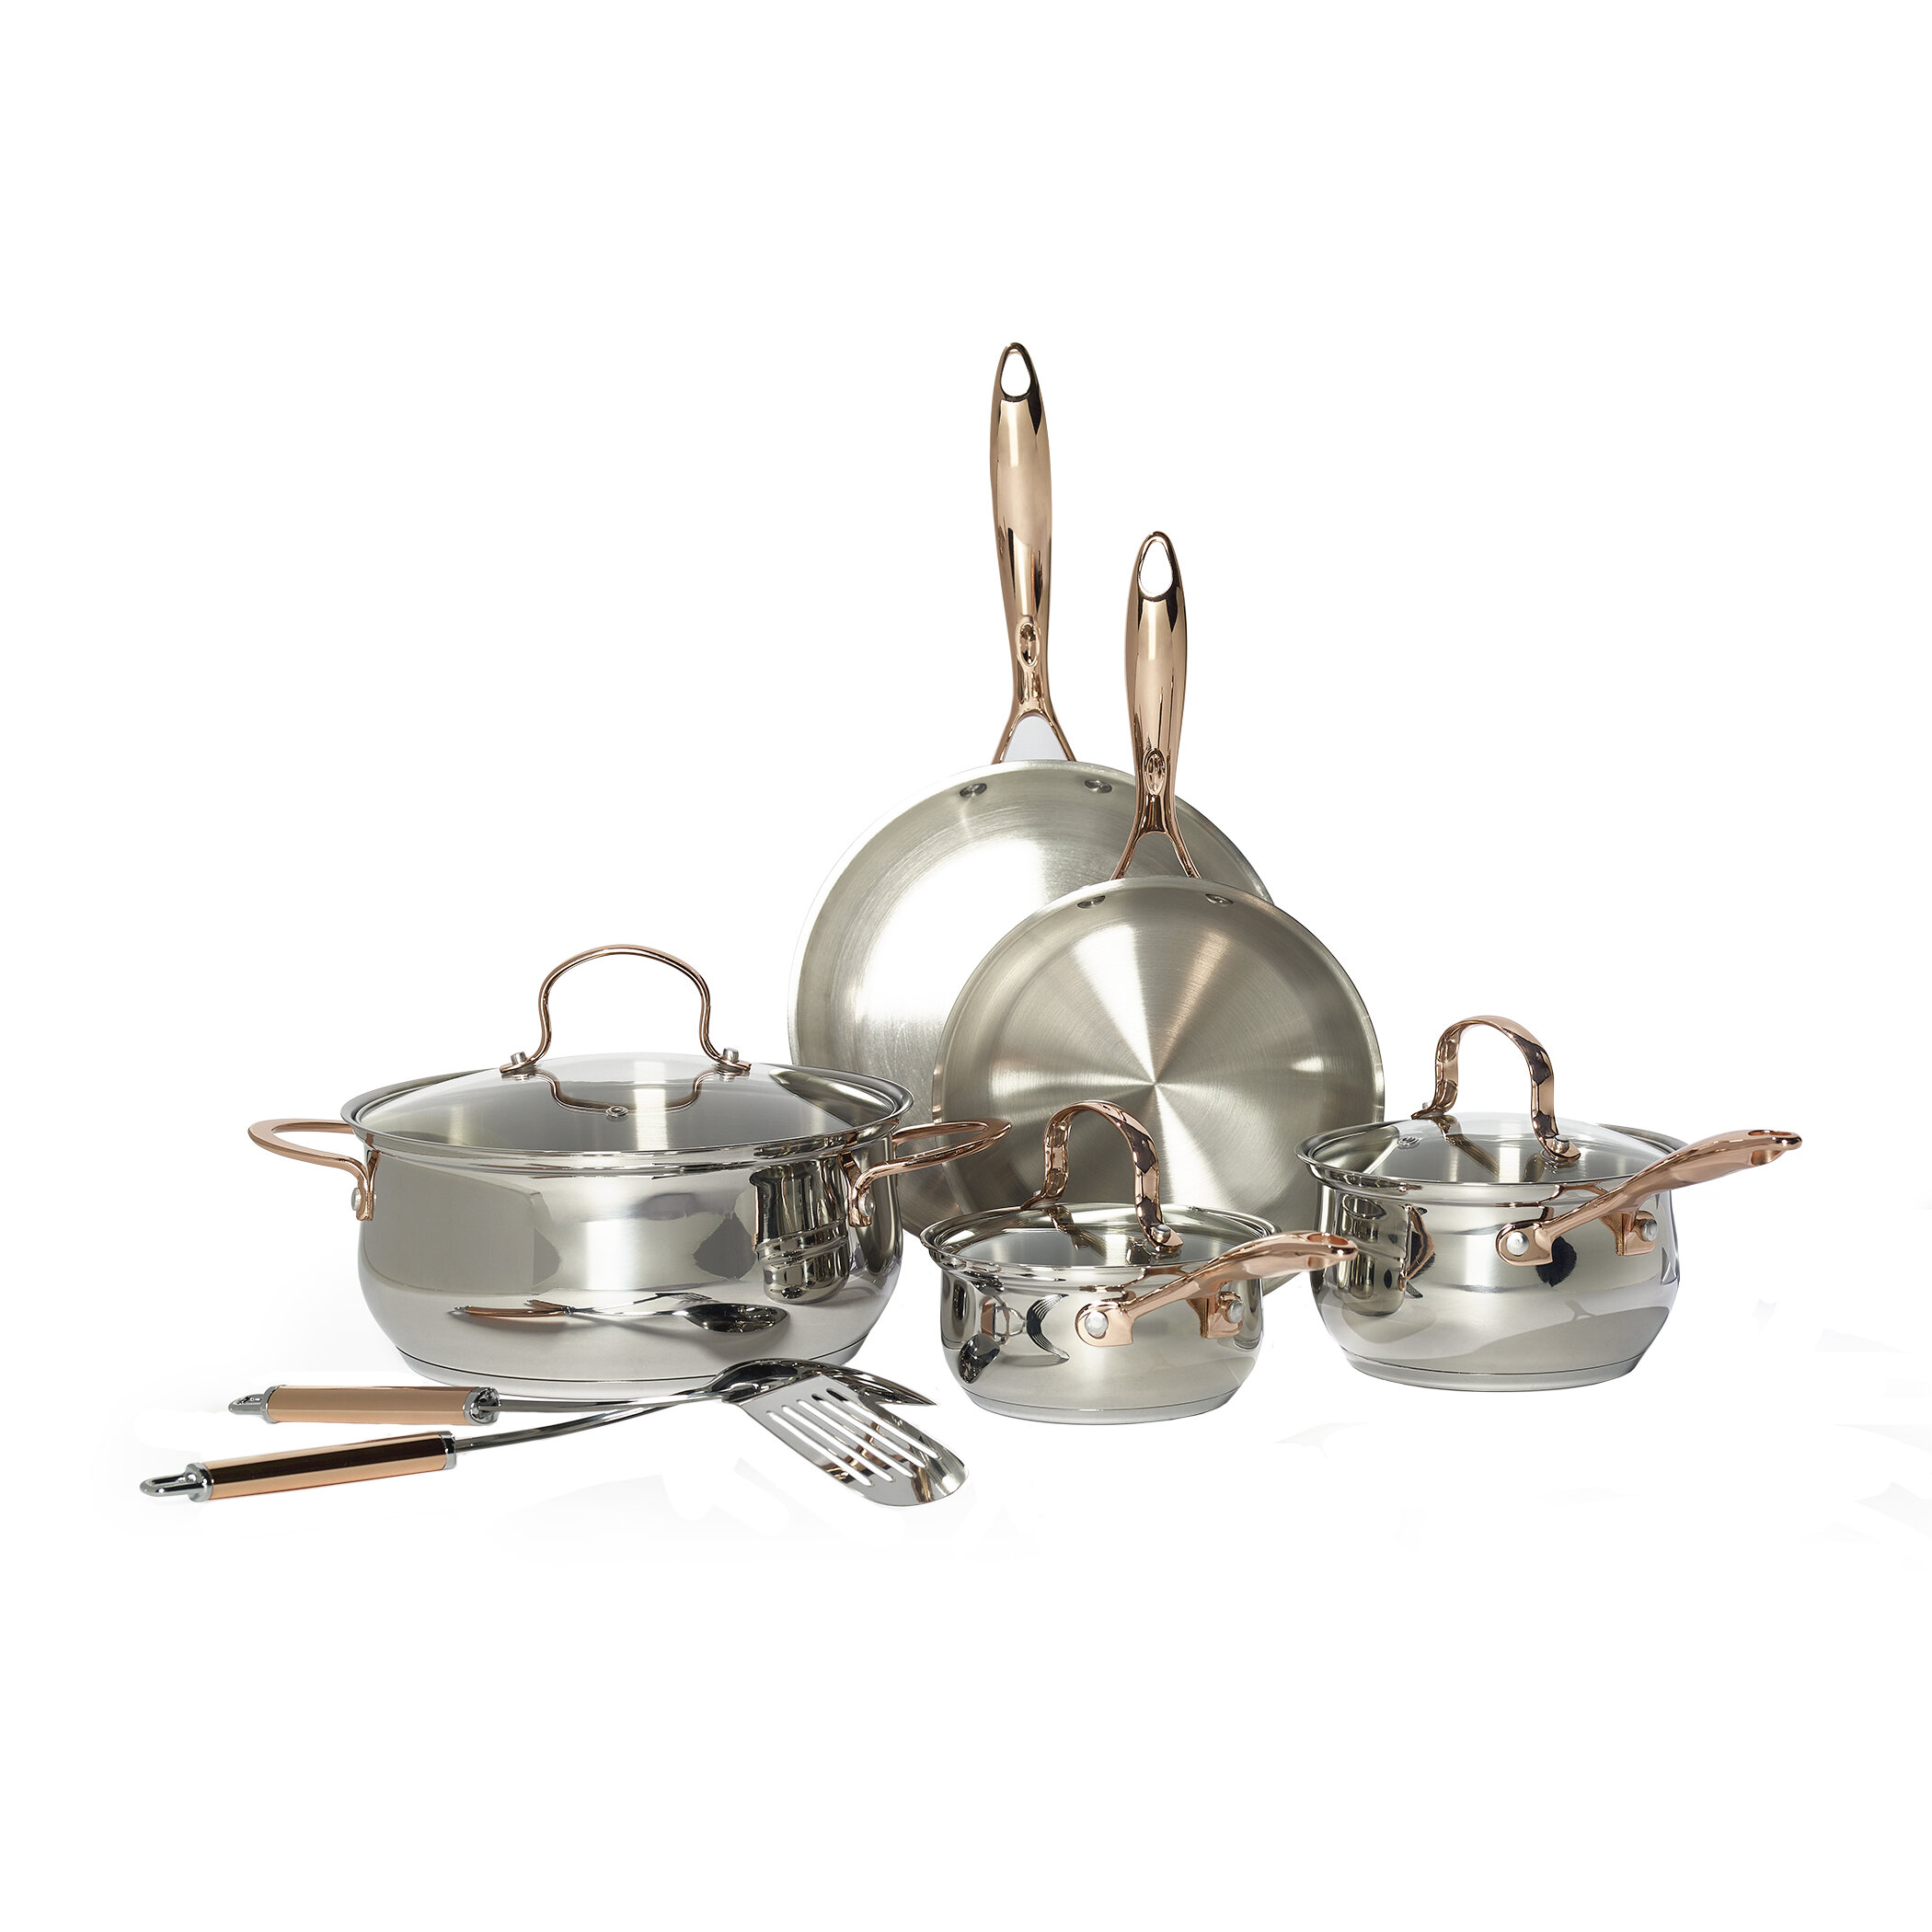 https://assets.wfcdn.com/im/00132725/compr-r85/1225/122577582/celebrations-10-piece-stainless-steel-cookware-set.jpg